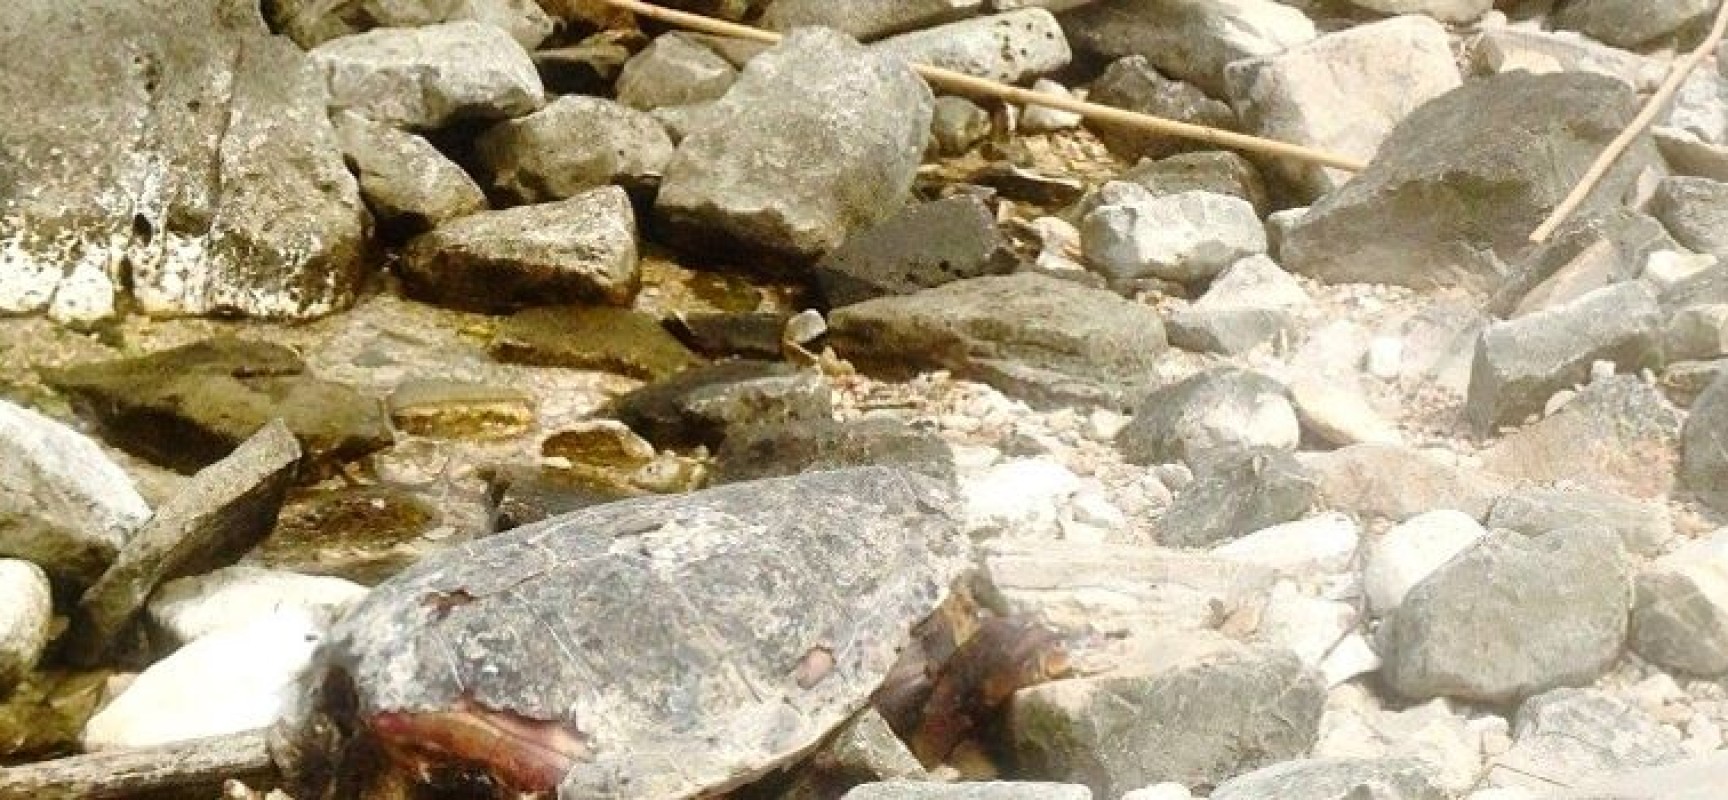 Carcassa di tartaruga marina ritrovata sulle coste biscegliesi